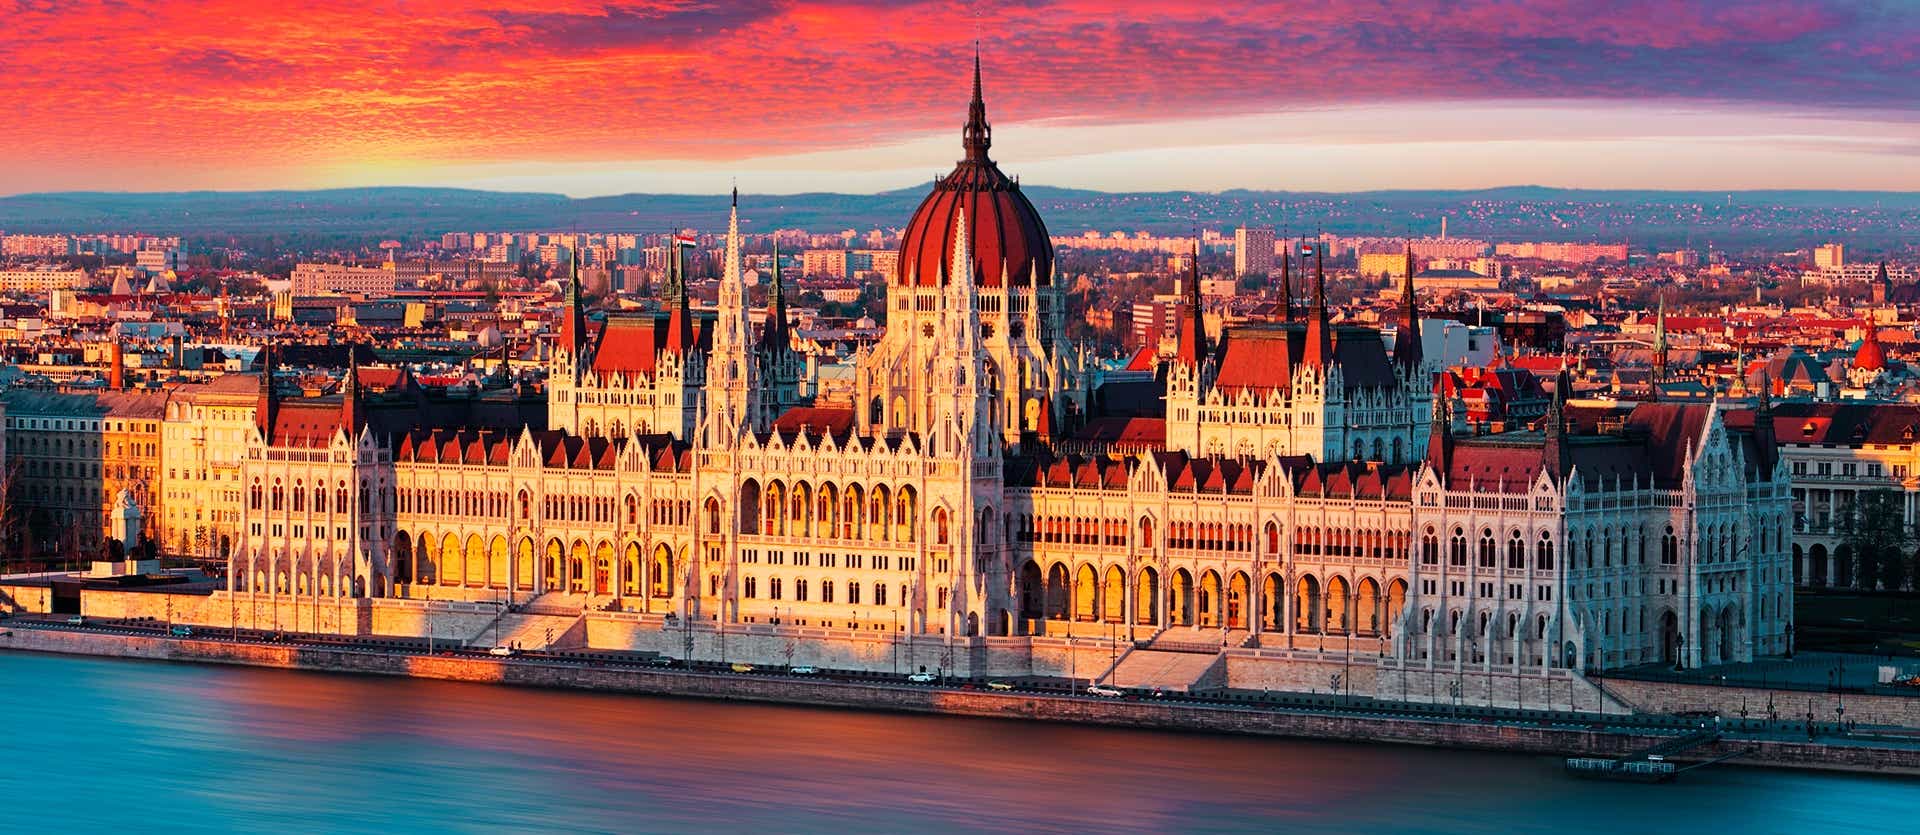 Edificio del Parlamento <span class="iconos separador"></span> Budapest <span class="iconos separador"></span> Hungría